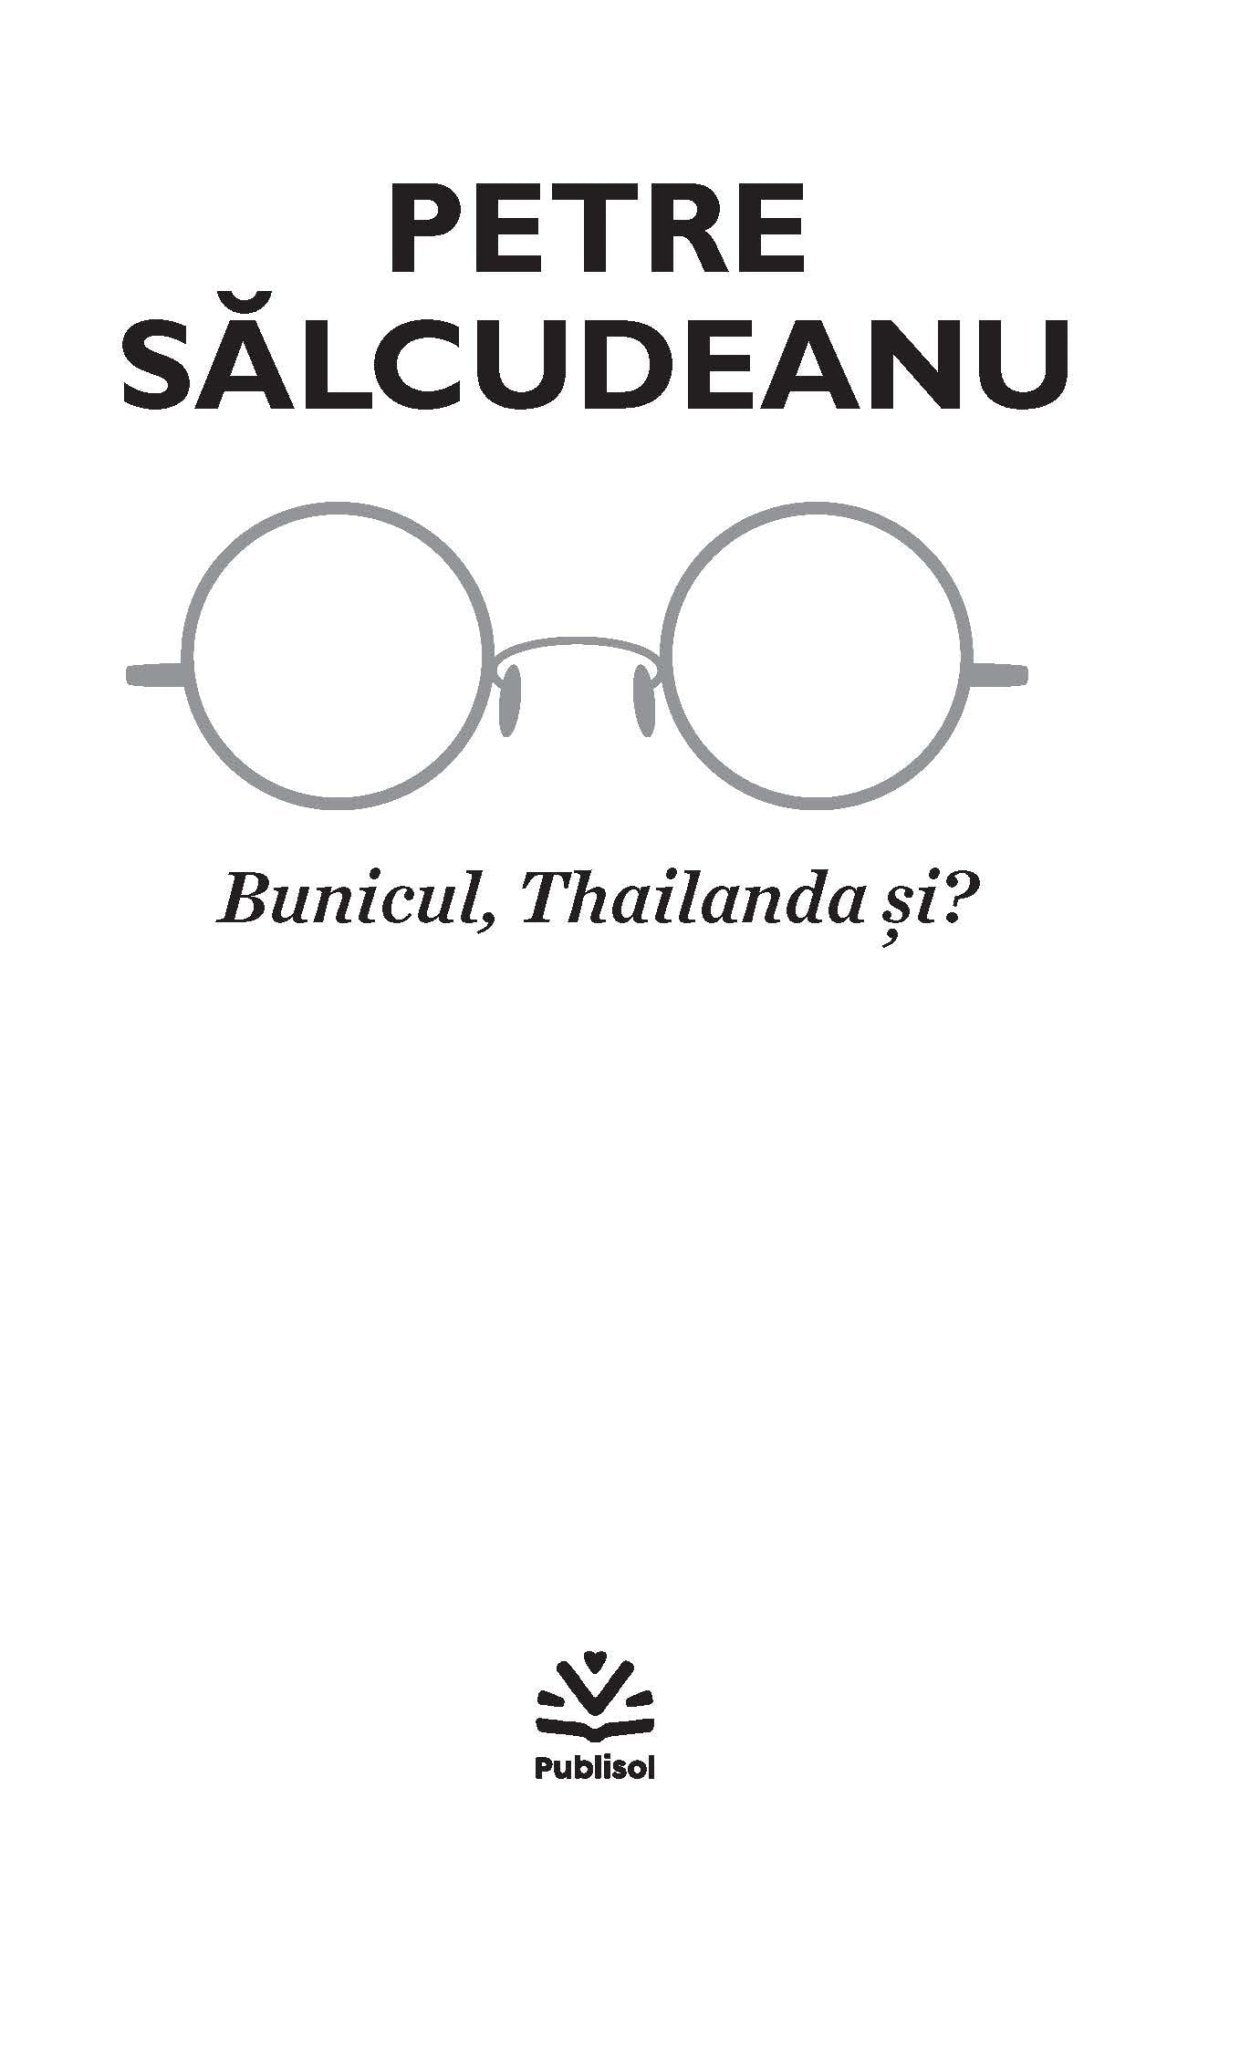 Bunicul, Thailanda si? - Publisol.ro